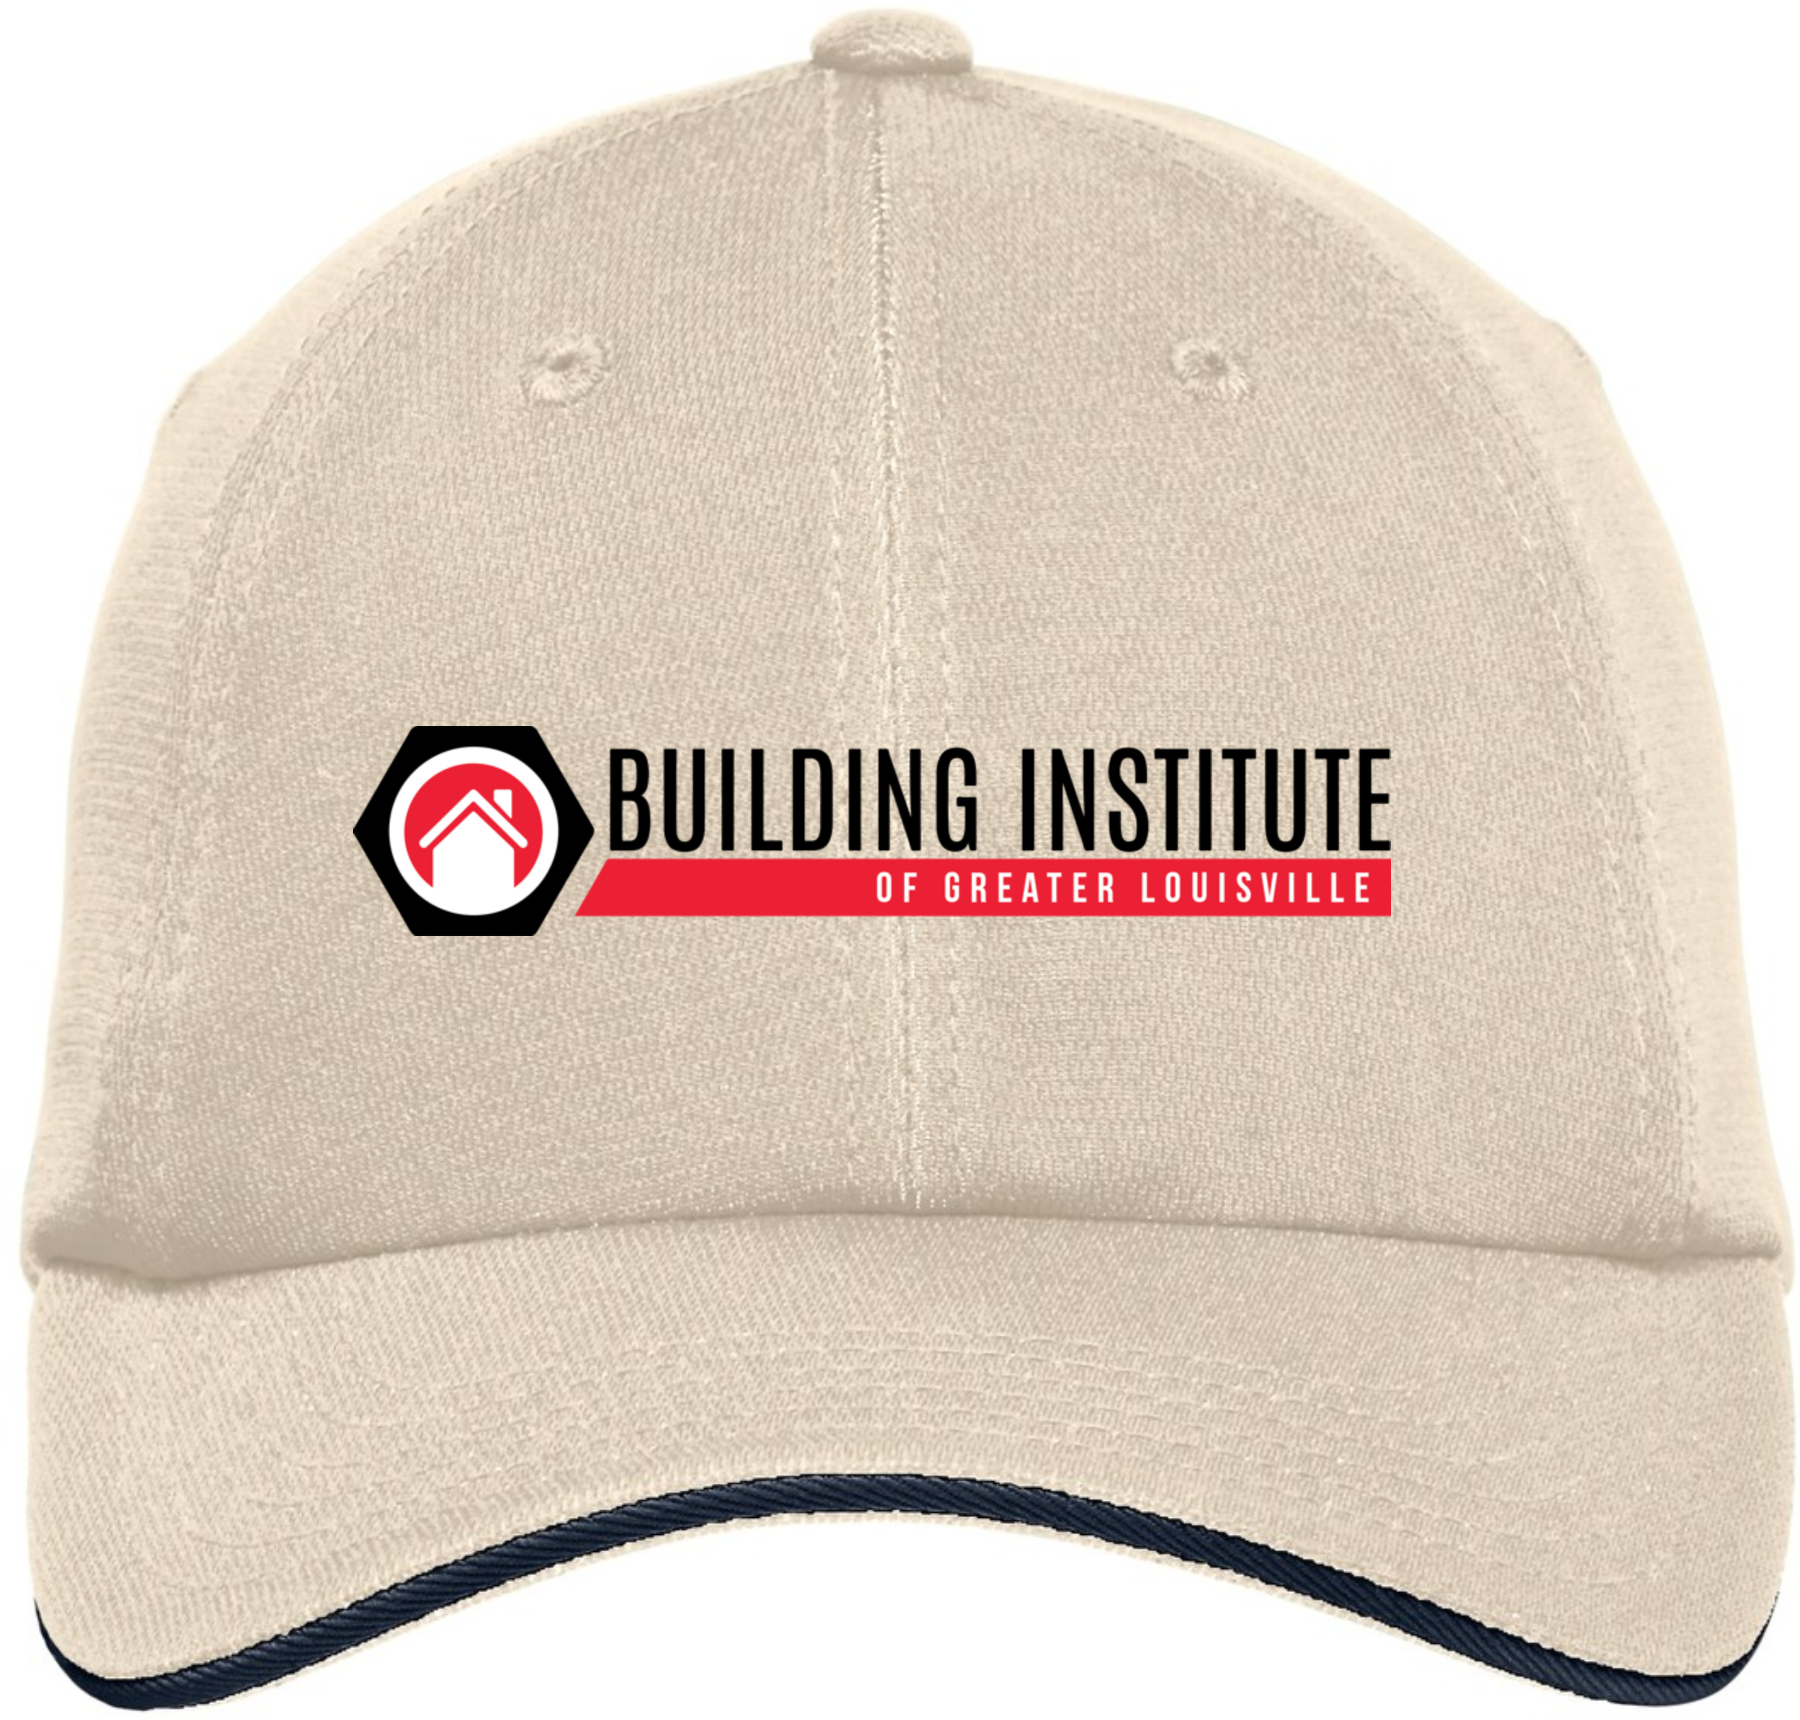 Building Institute - Port Authority® Dry Zone® Cap - C838 (Black Logo)